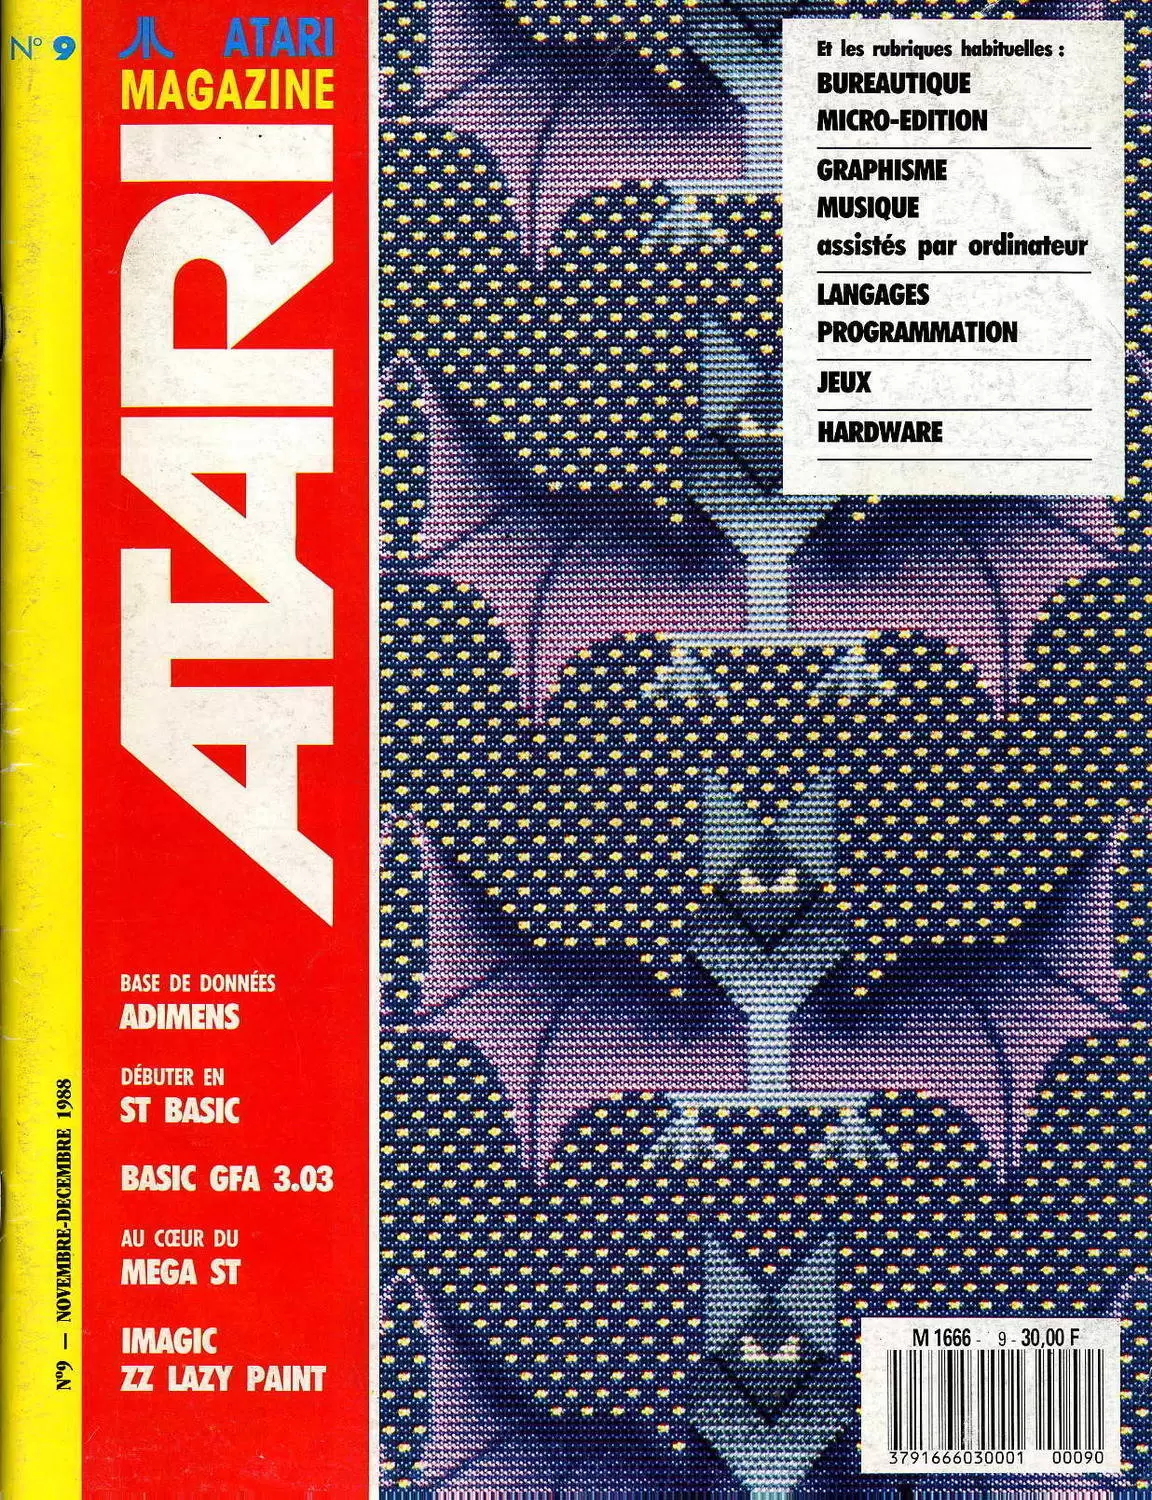 Atari Magazine (1ère série) - Atari Magazine (1ère série) n°9